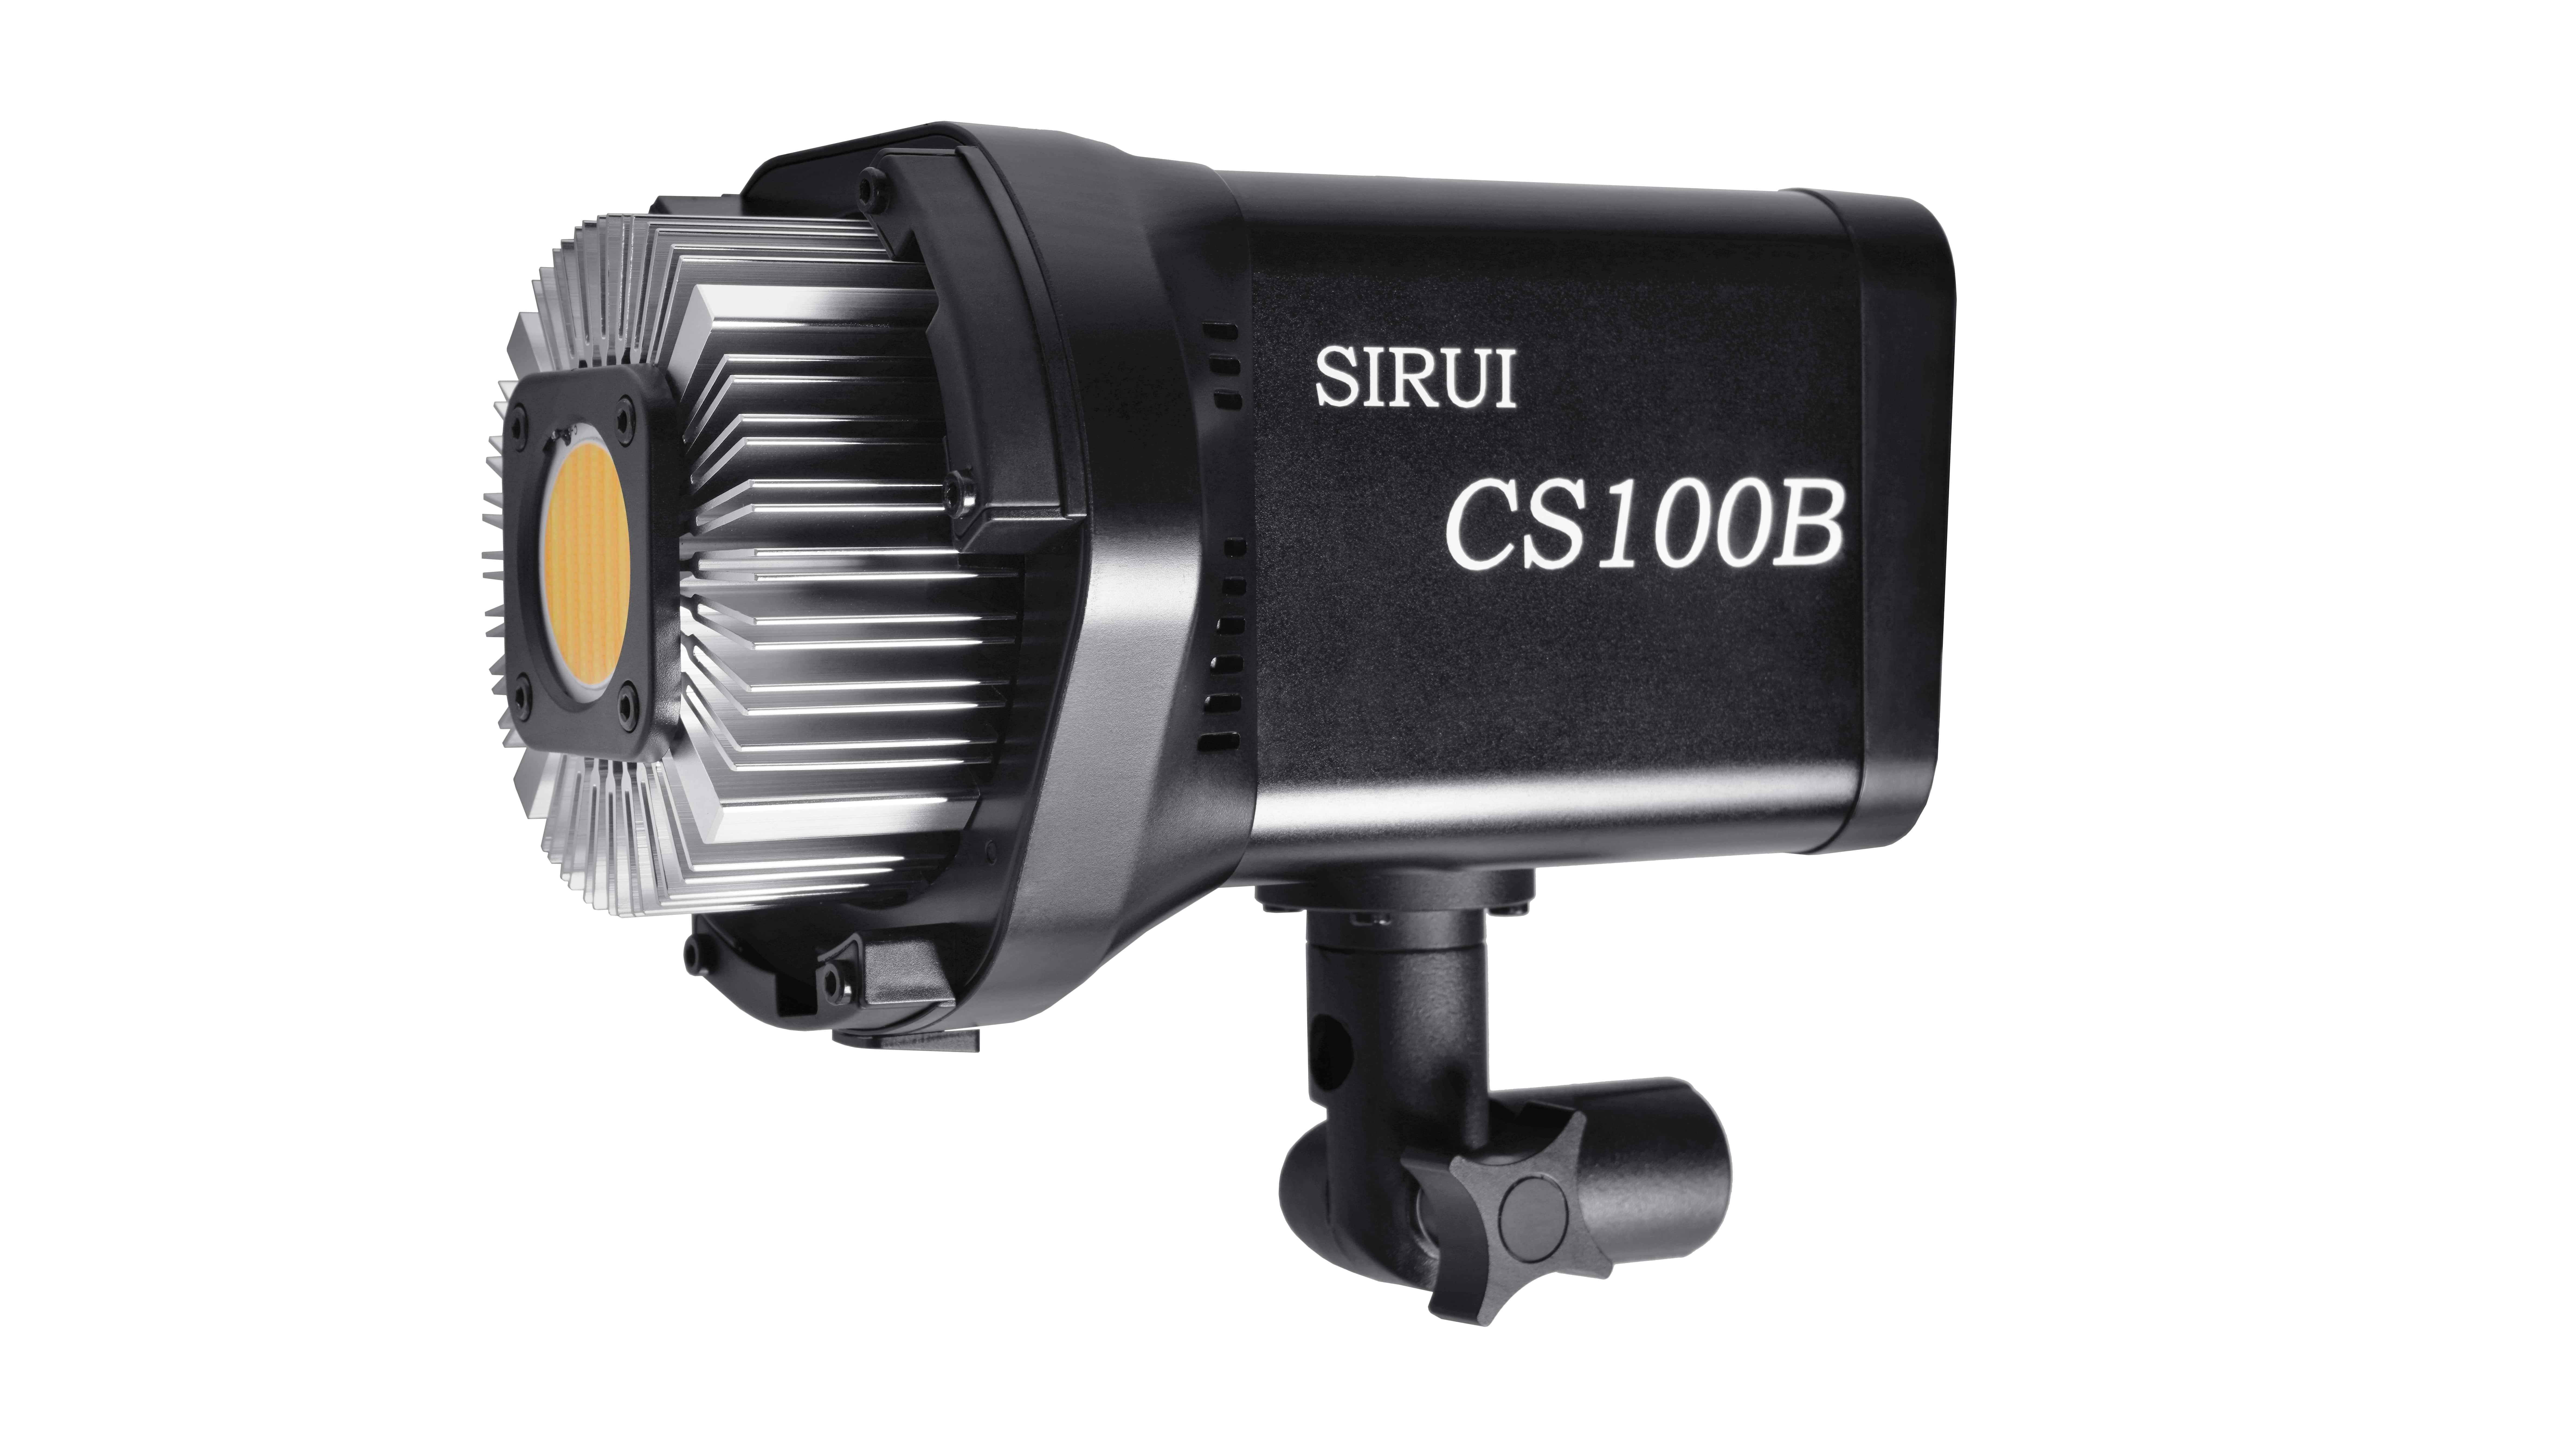 Sirui CS100B Bi-Color LED Dauerlicht / Studioleuchte 100W mit Bowens Mount